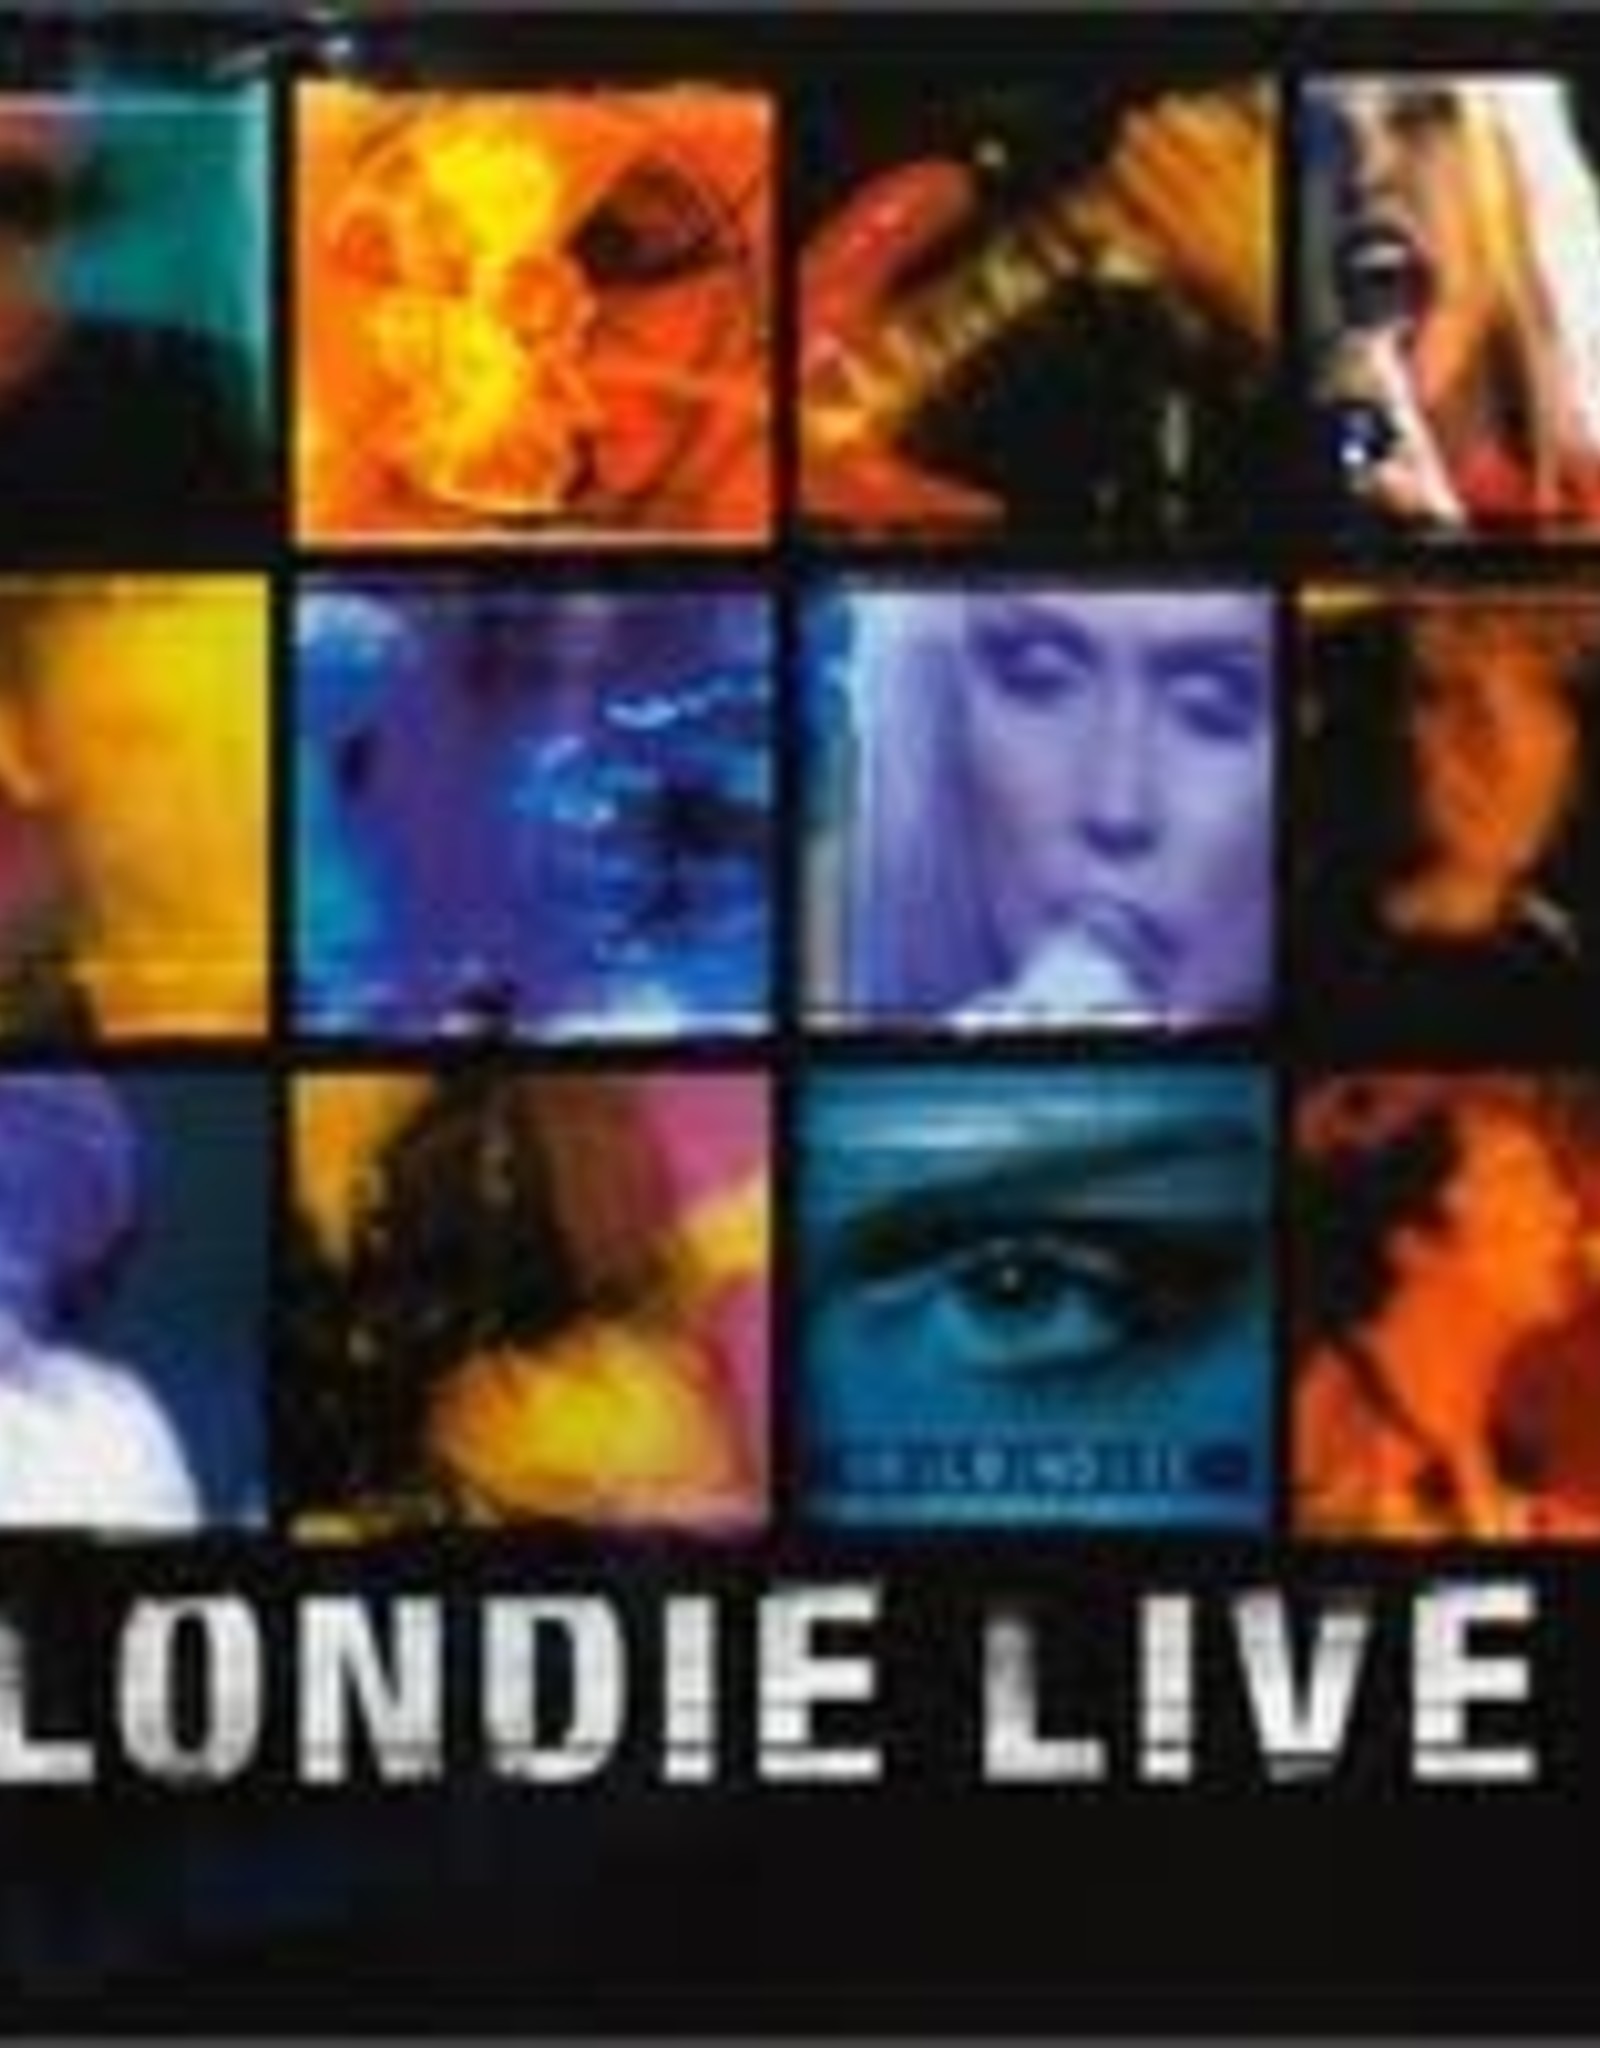 Blondie - Live